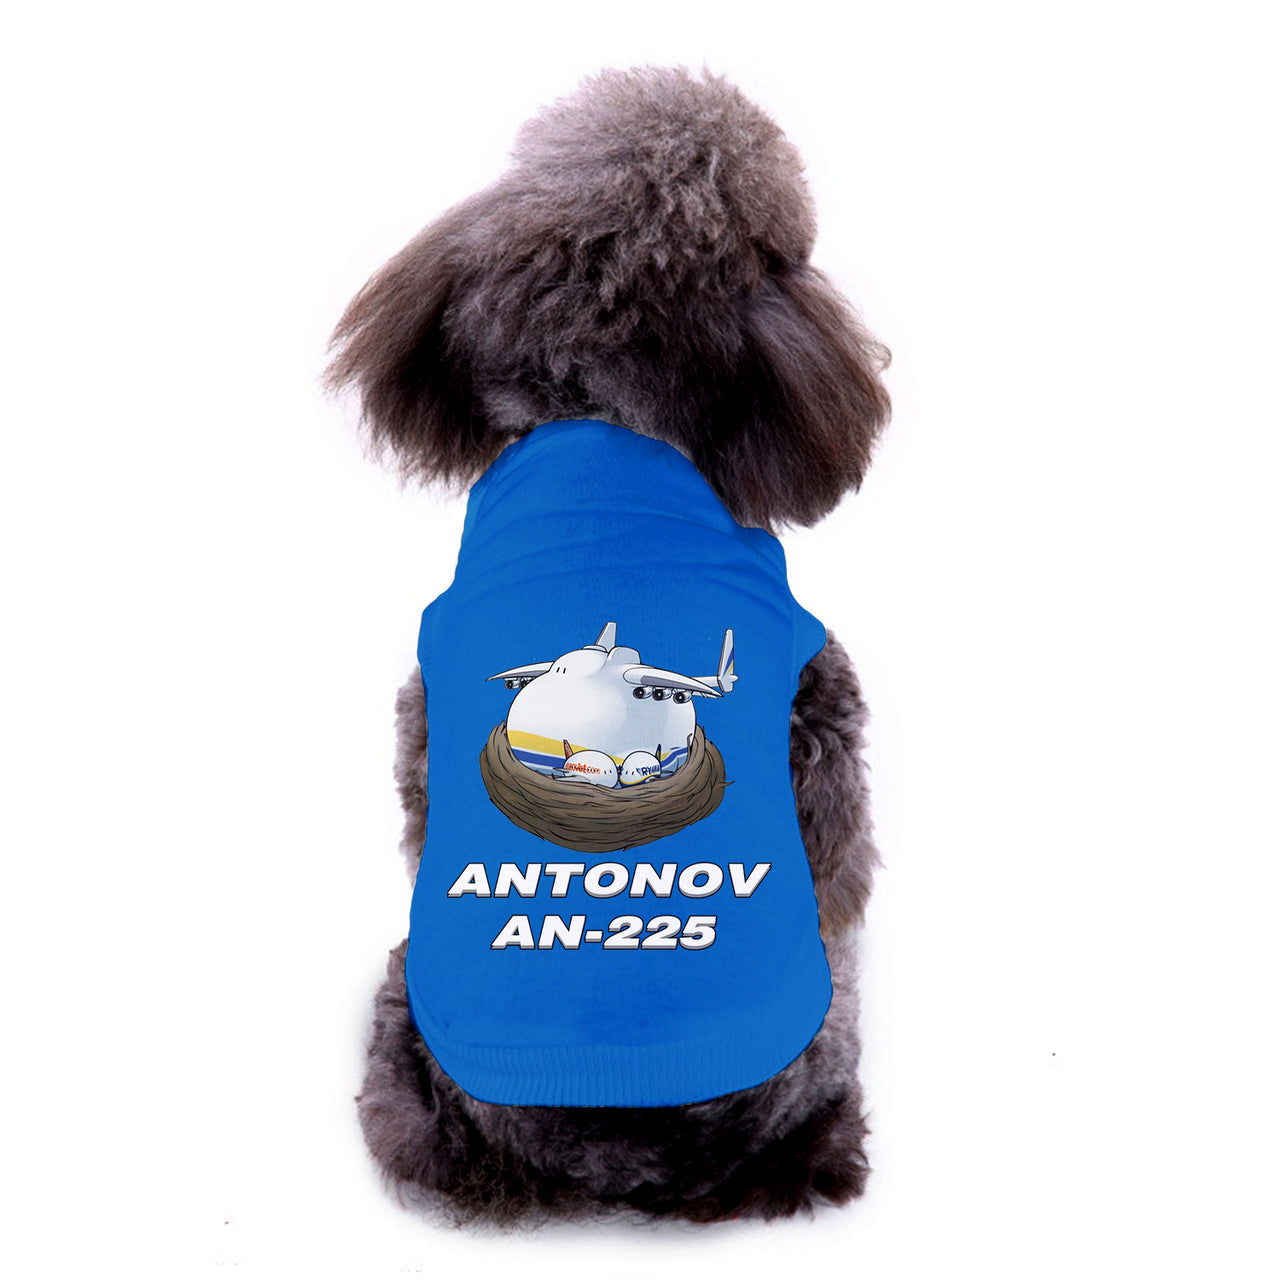 Antonov AN-225 (22) Designed Dog Pet Vests